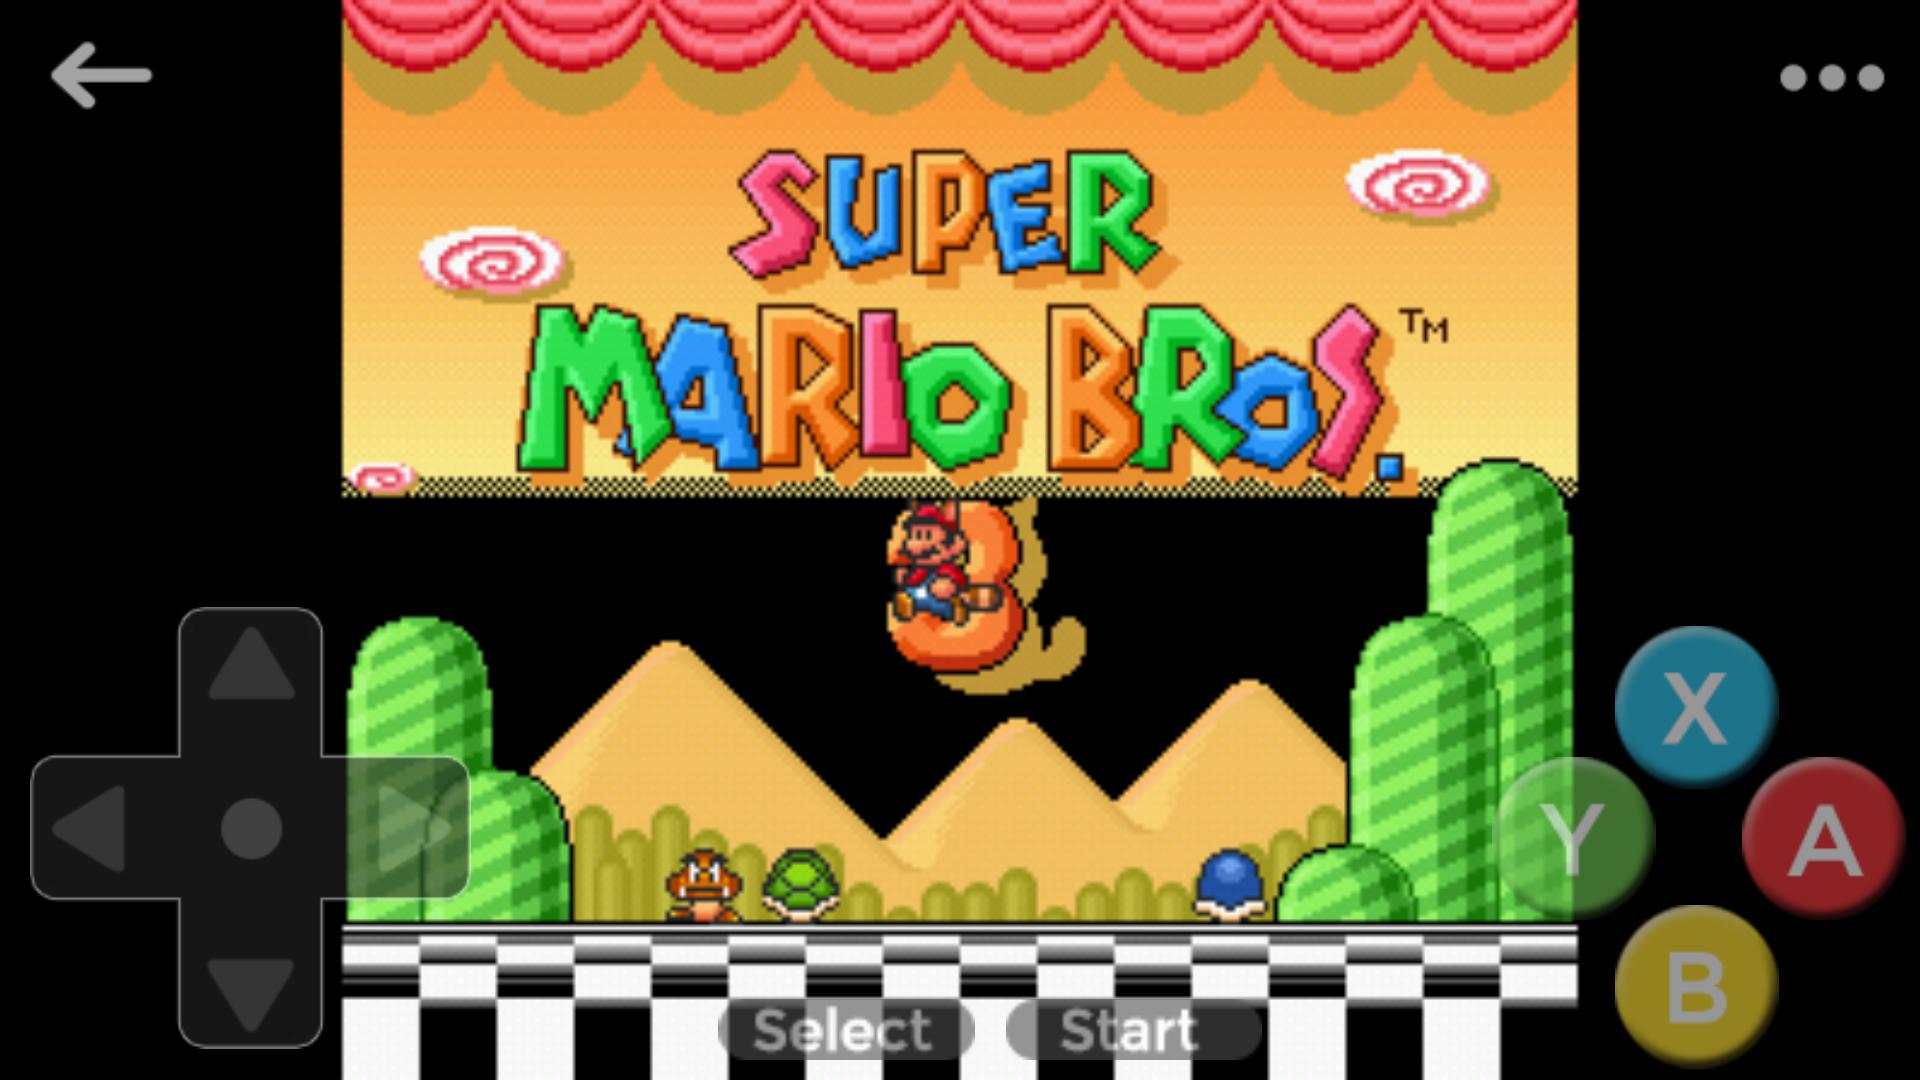 Mario bros snes